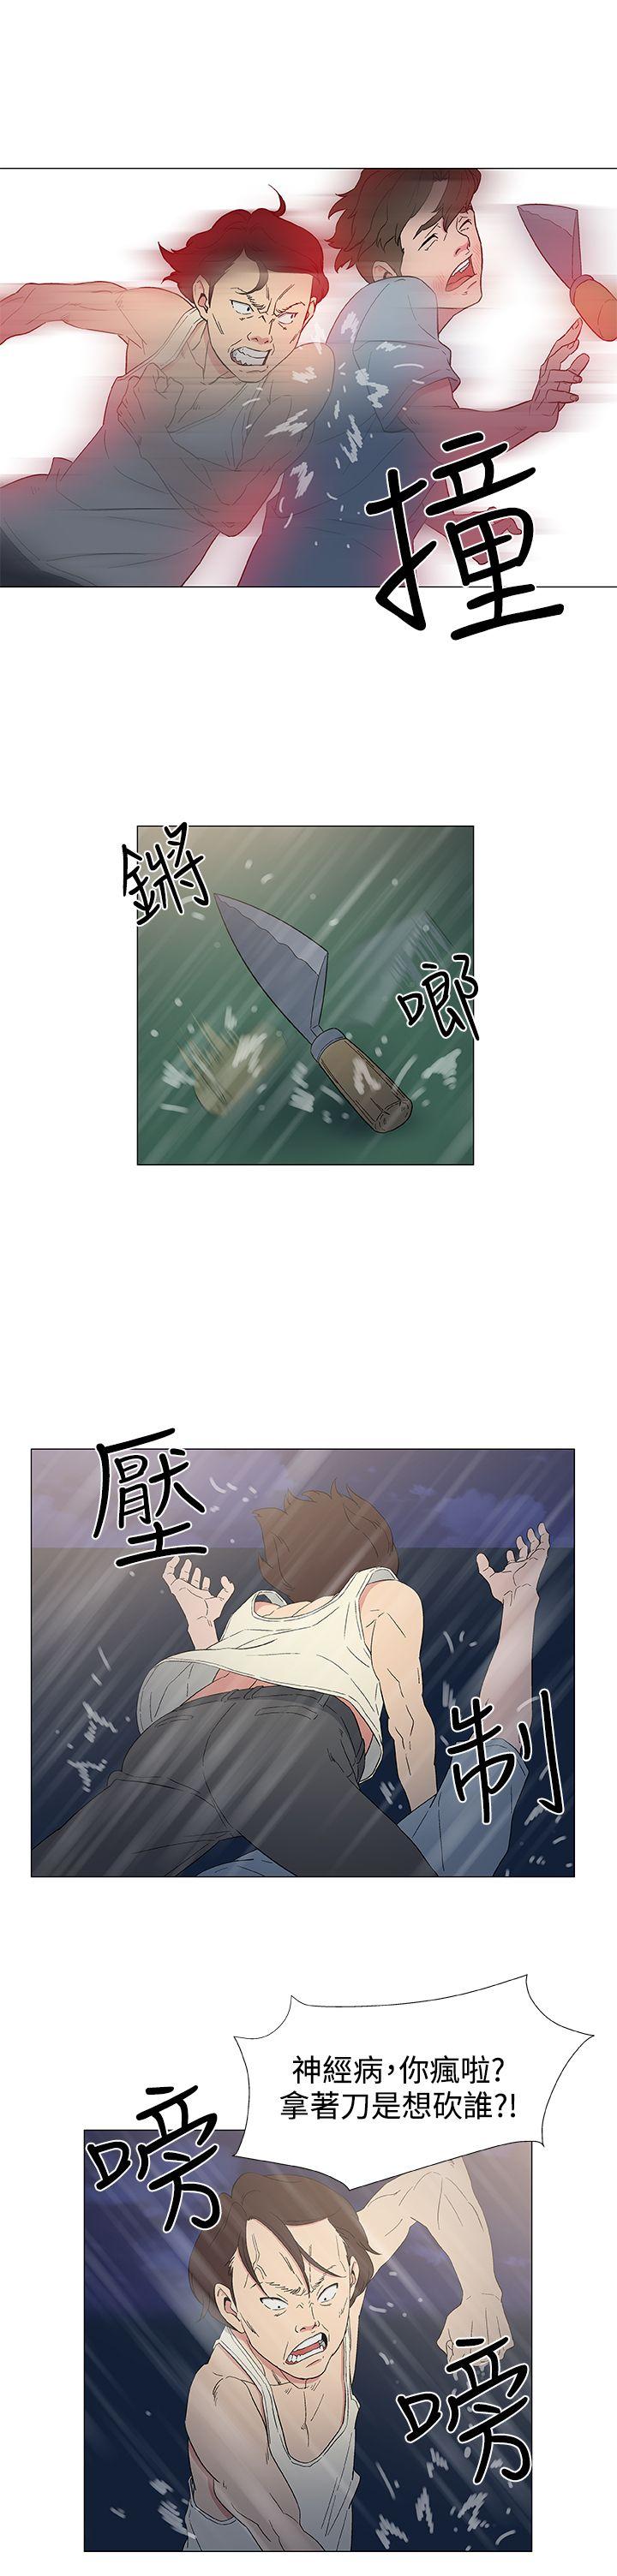 韩国污漫画 黑暗之海 第9话 17